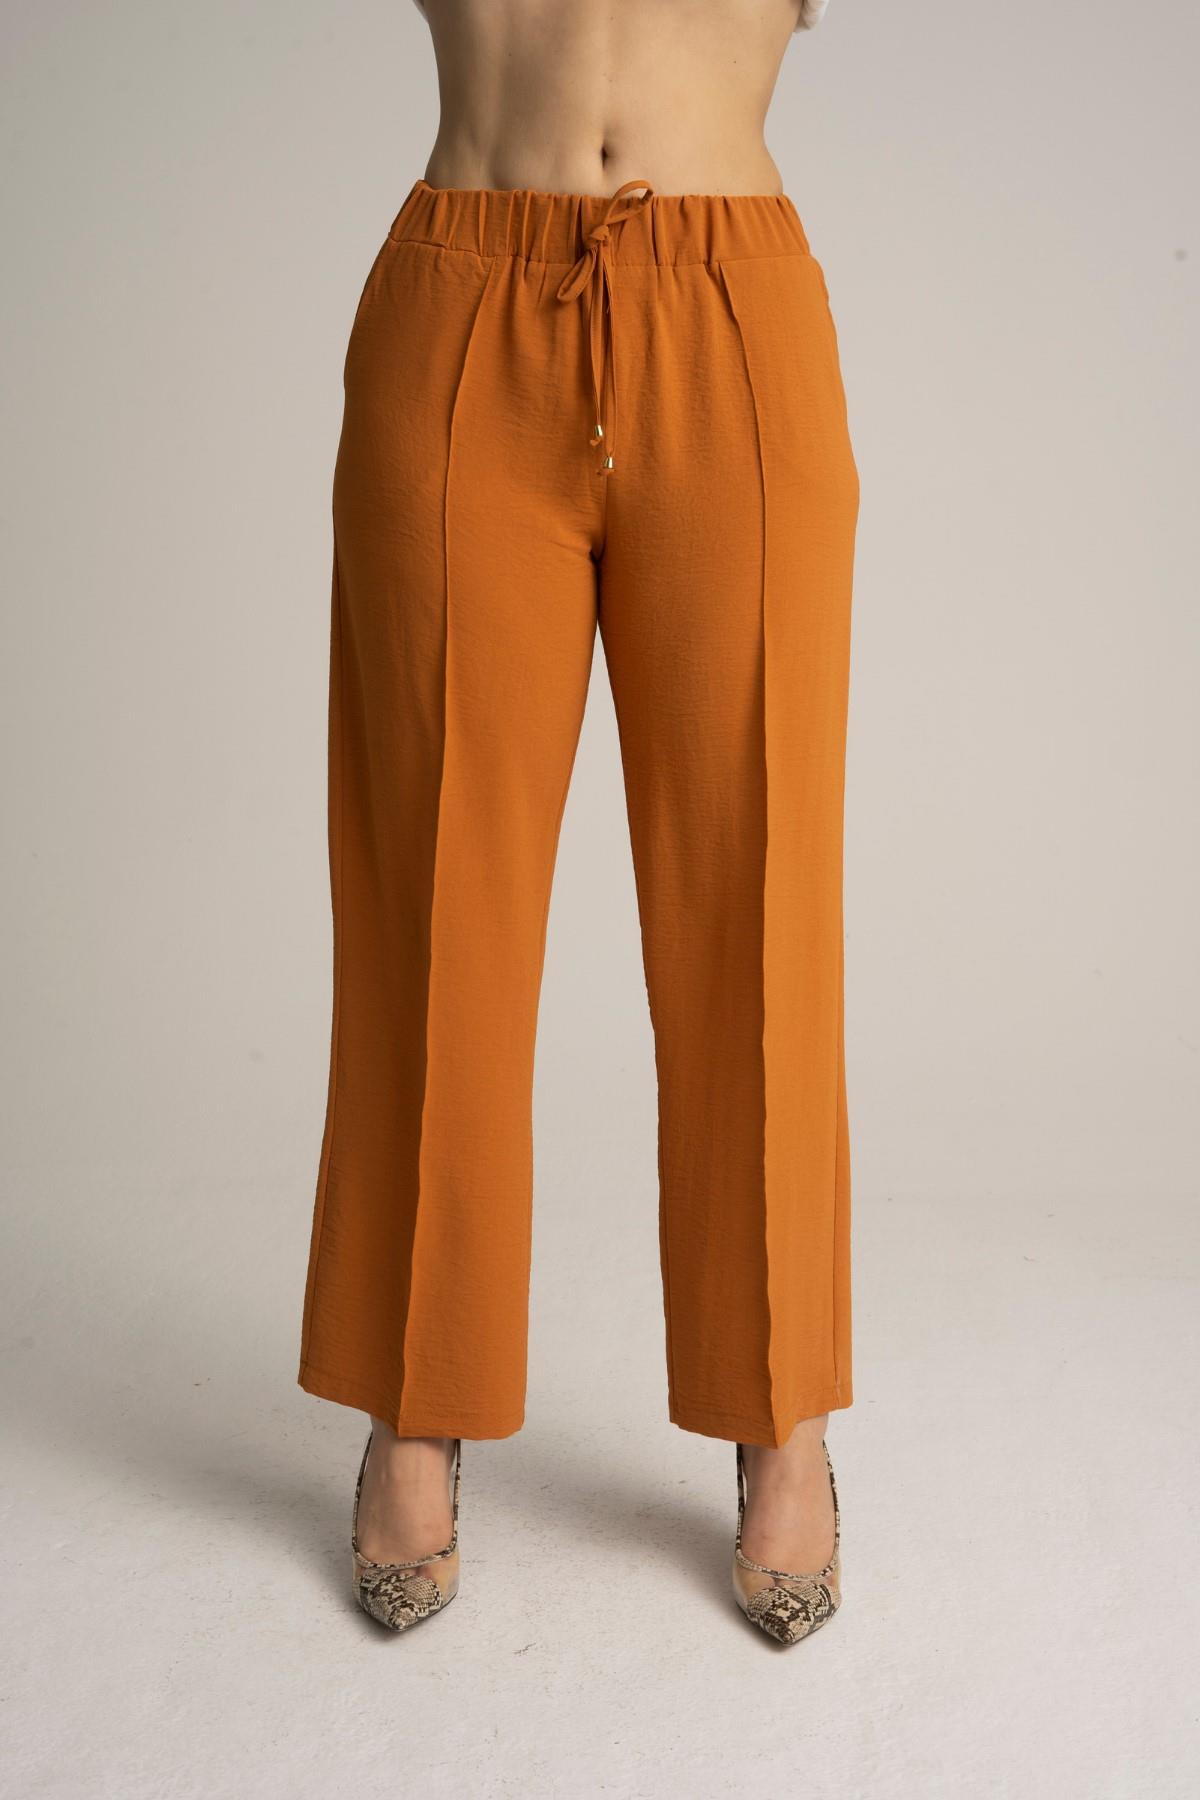 Kadın Büyük Beden Beli Lastikli Bol Paça Salaş Yazlık Tarçın Renk Pantolon